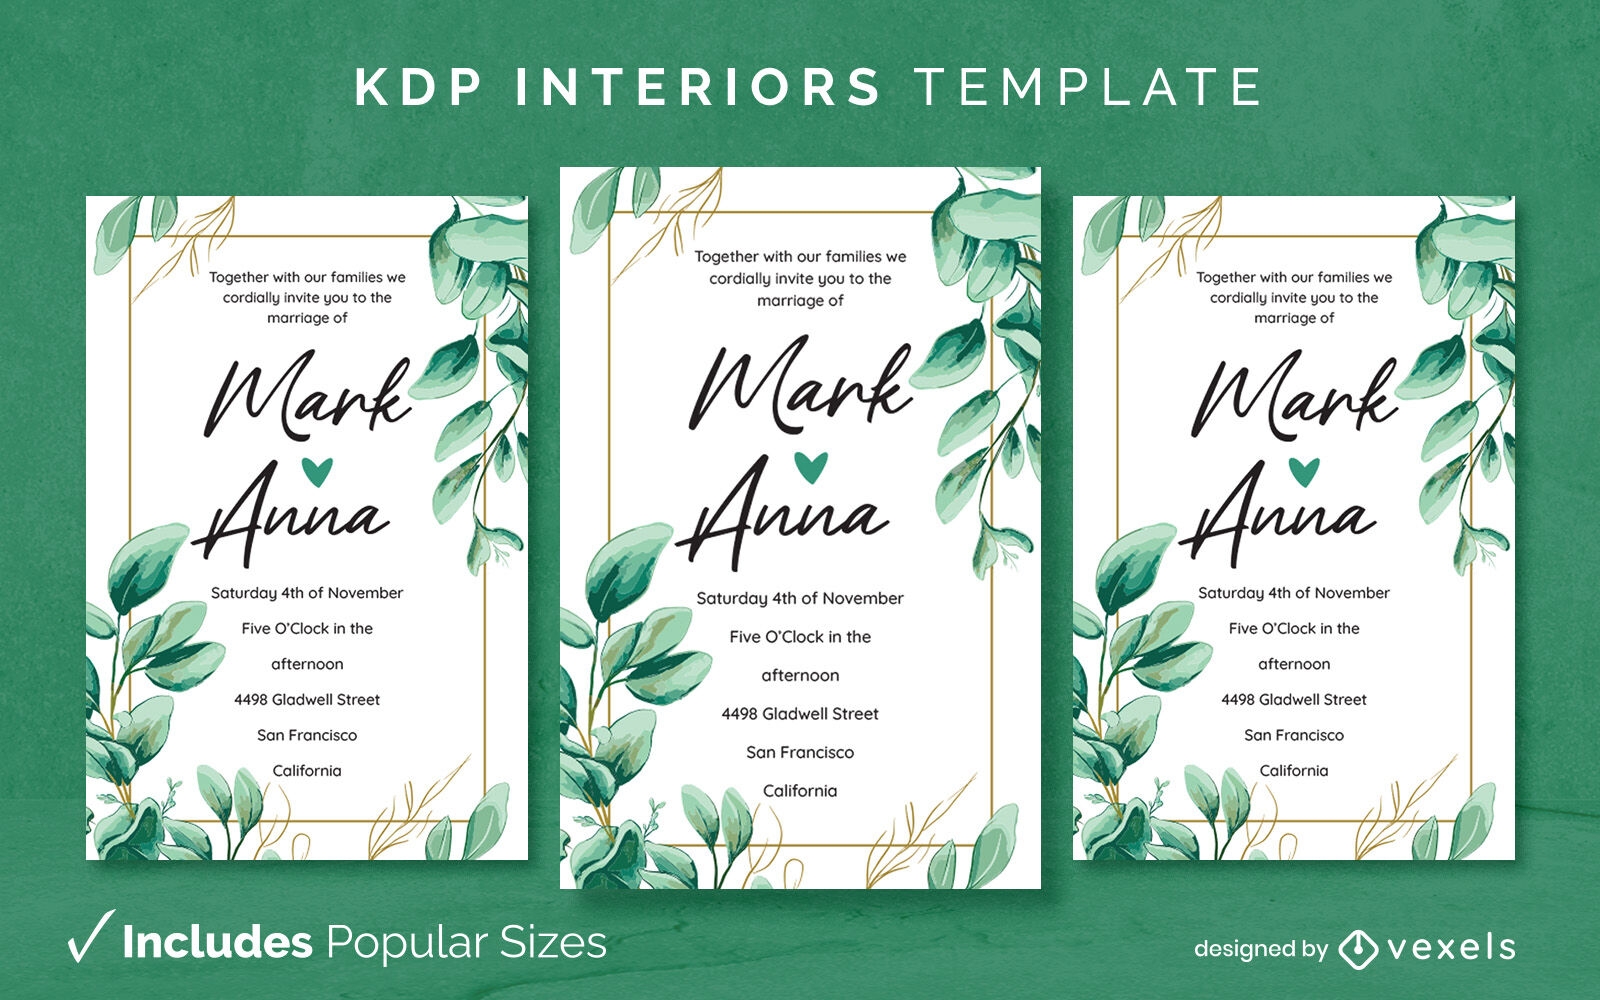 Design de modelo de interior KDP de convite de casamento